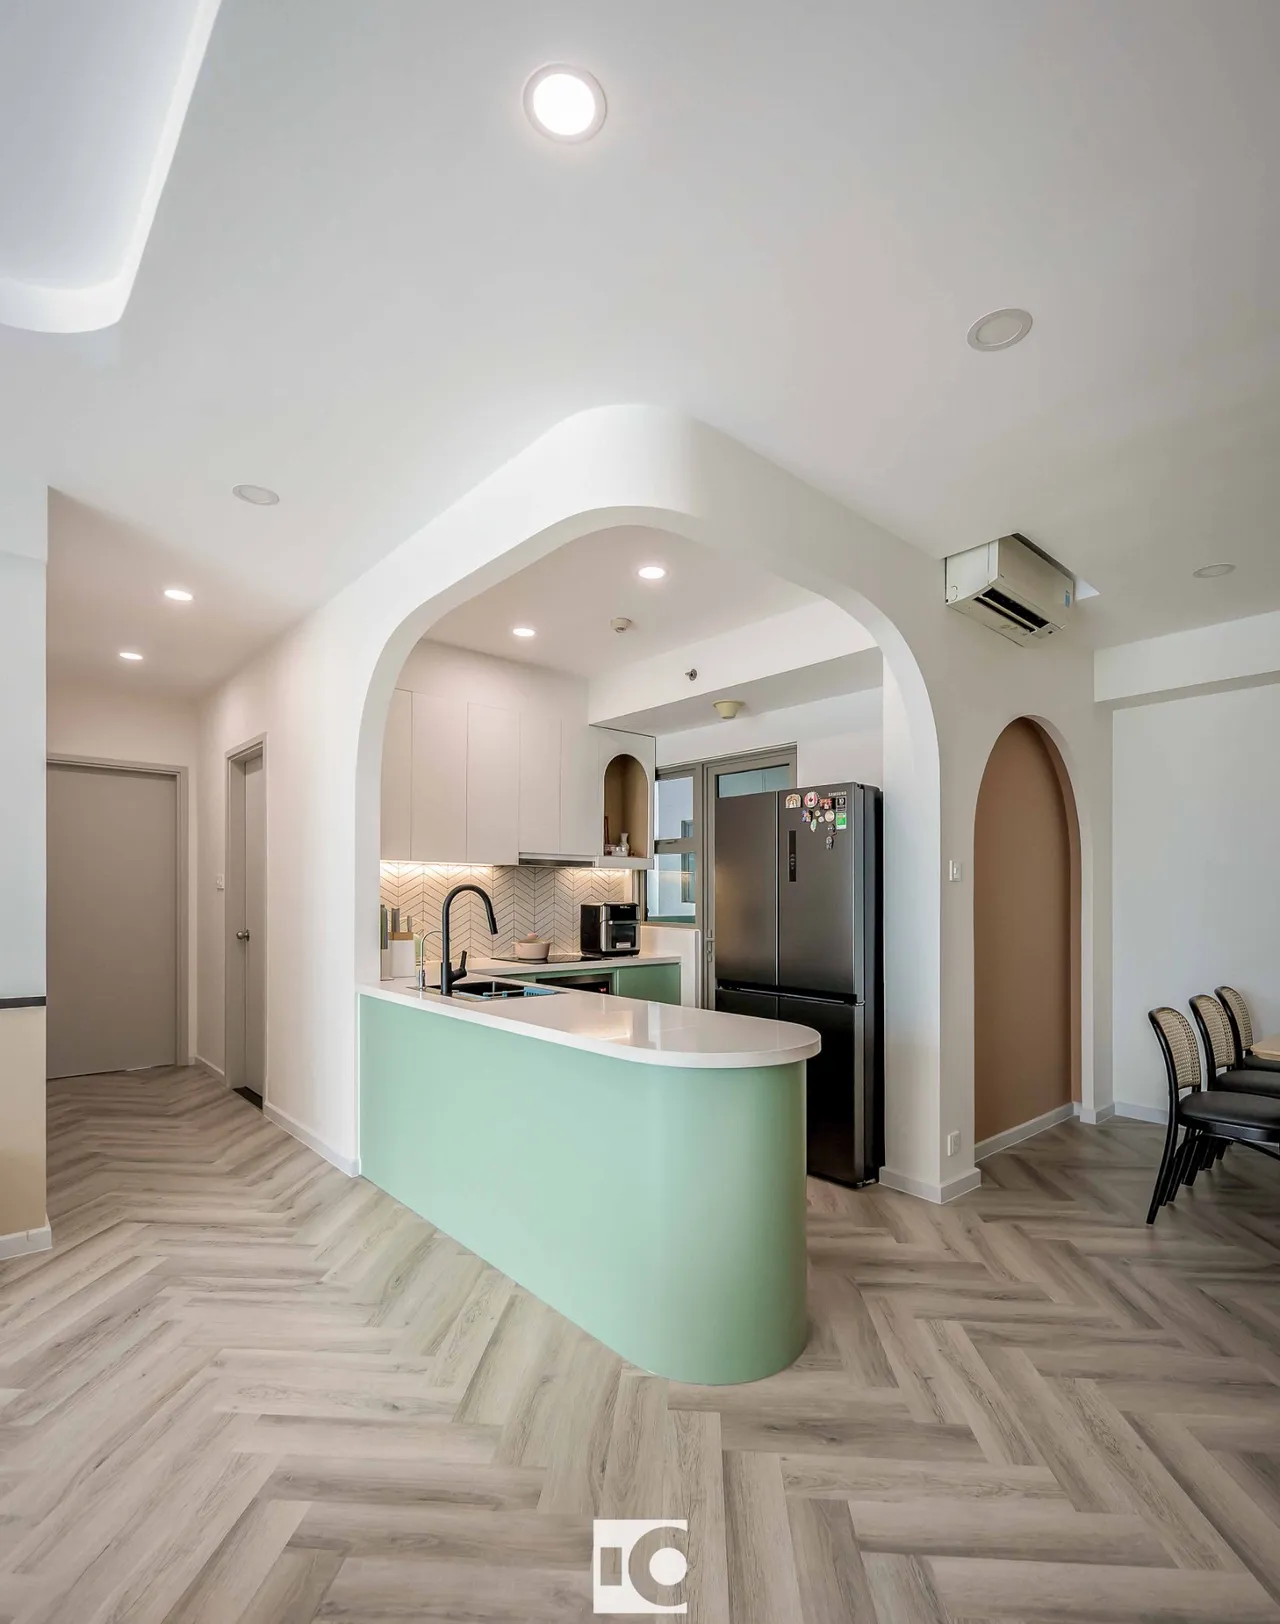 Hoàn thiện nội thất nhà bếp Căn hộ The Riviera Point Quận 7 phong cách Tối giản Minimalist, phong cách Color Block